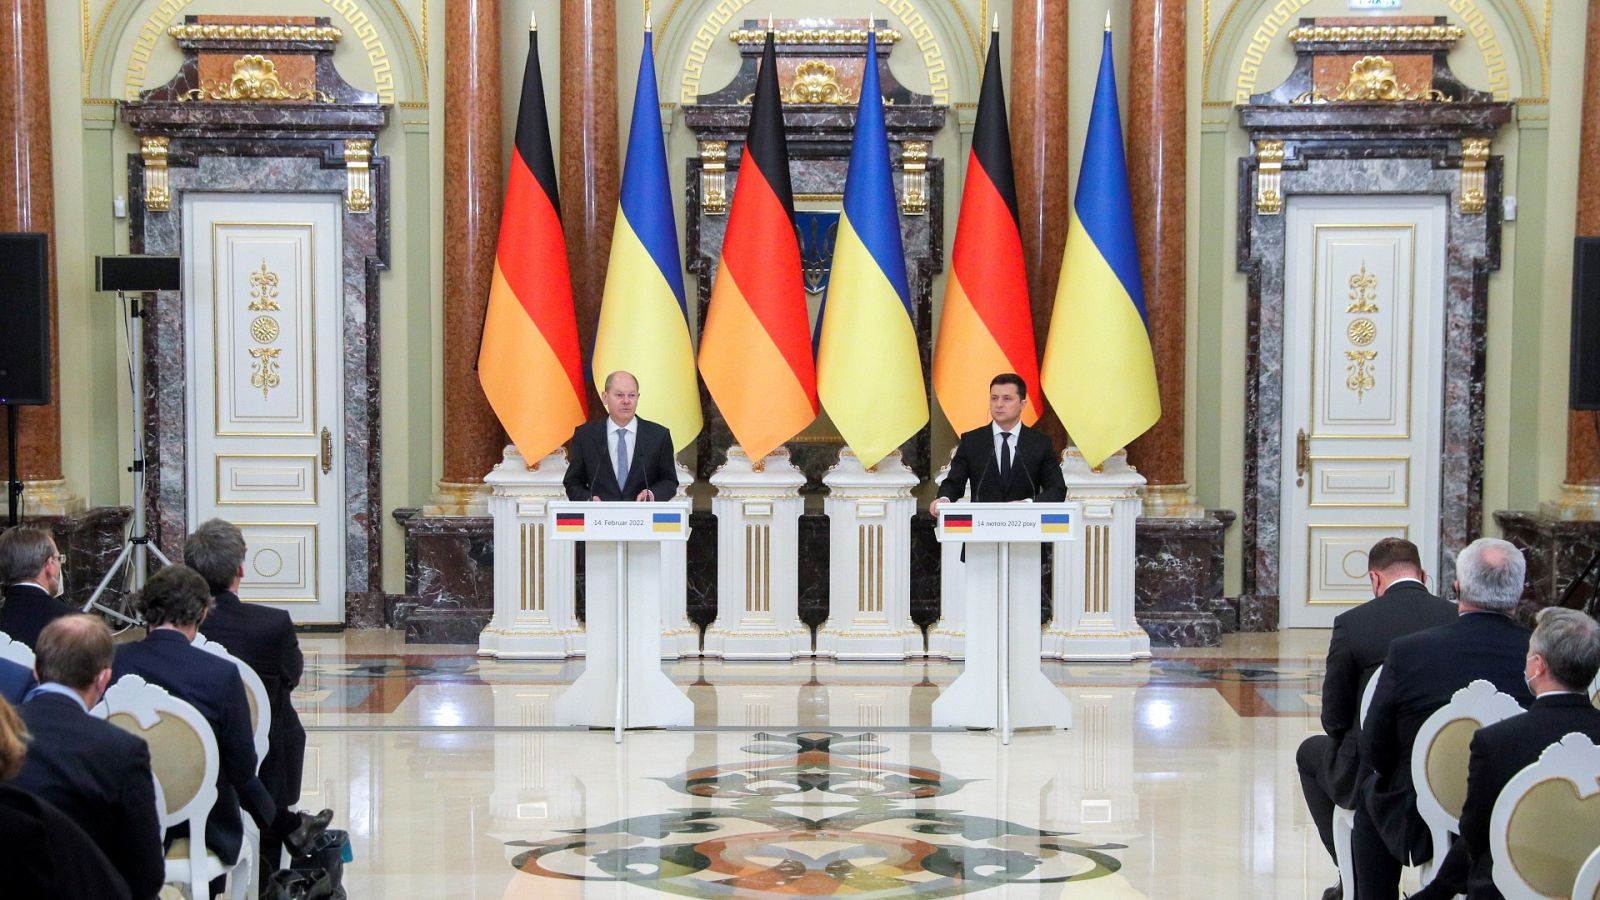 24 horas - Ucrania no renuncia a formar parte de la Alianza Atlántica  - Escuchar ahora